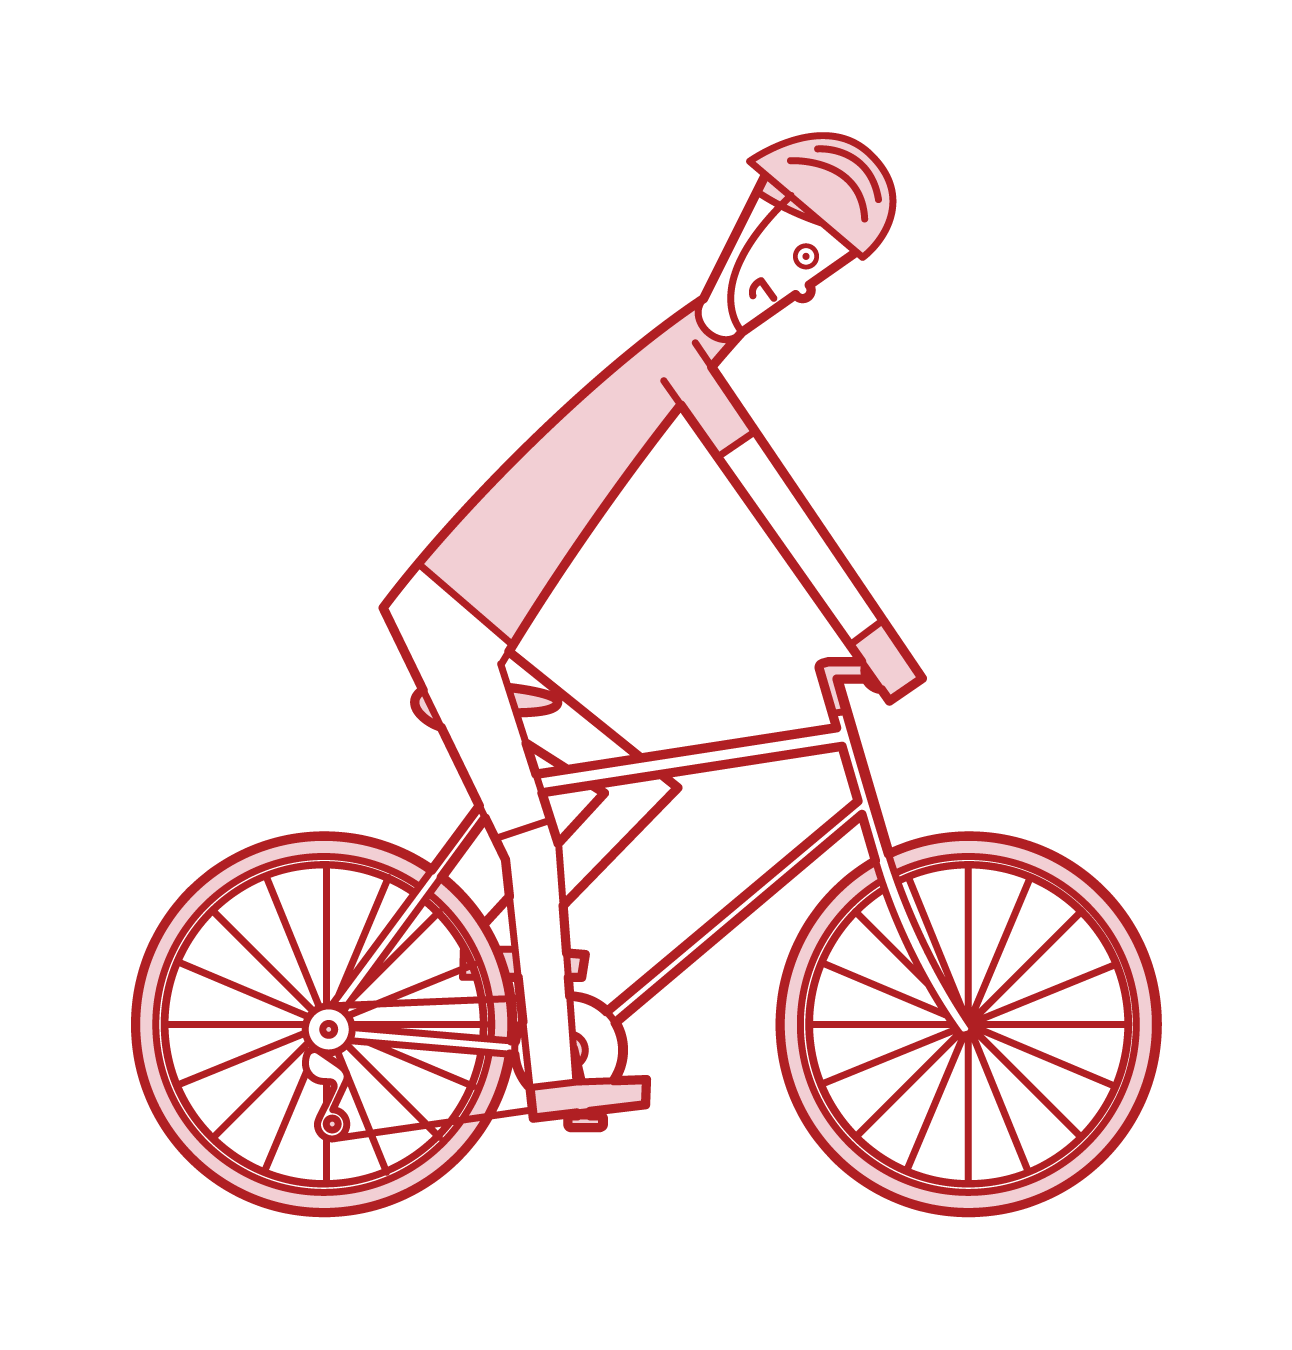 從側面看騎自行車(男性)的插圖